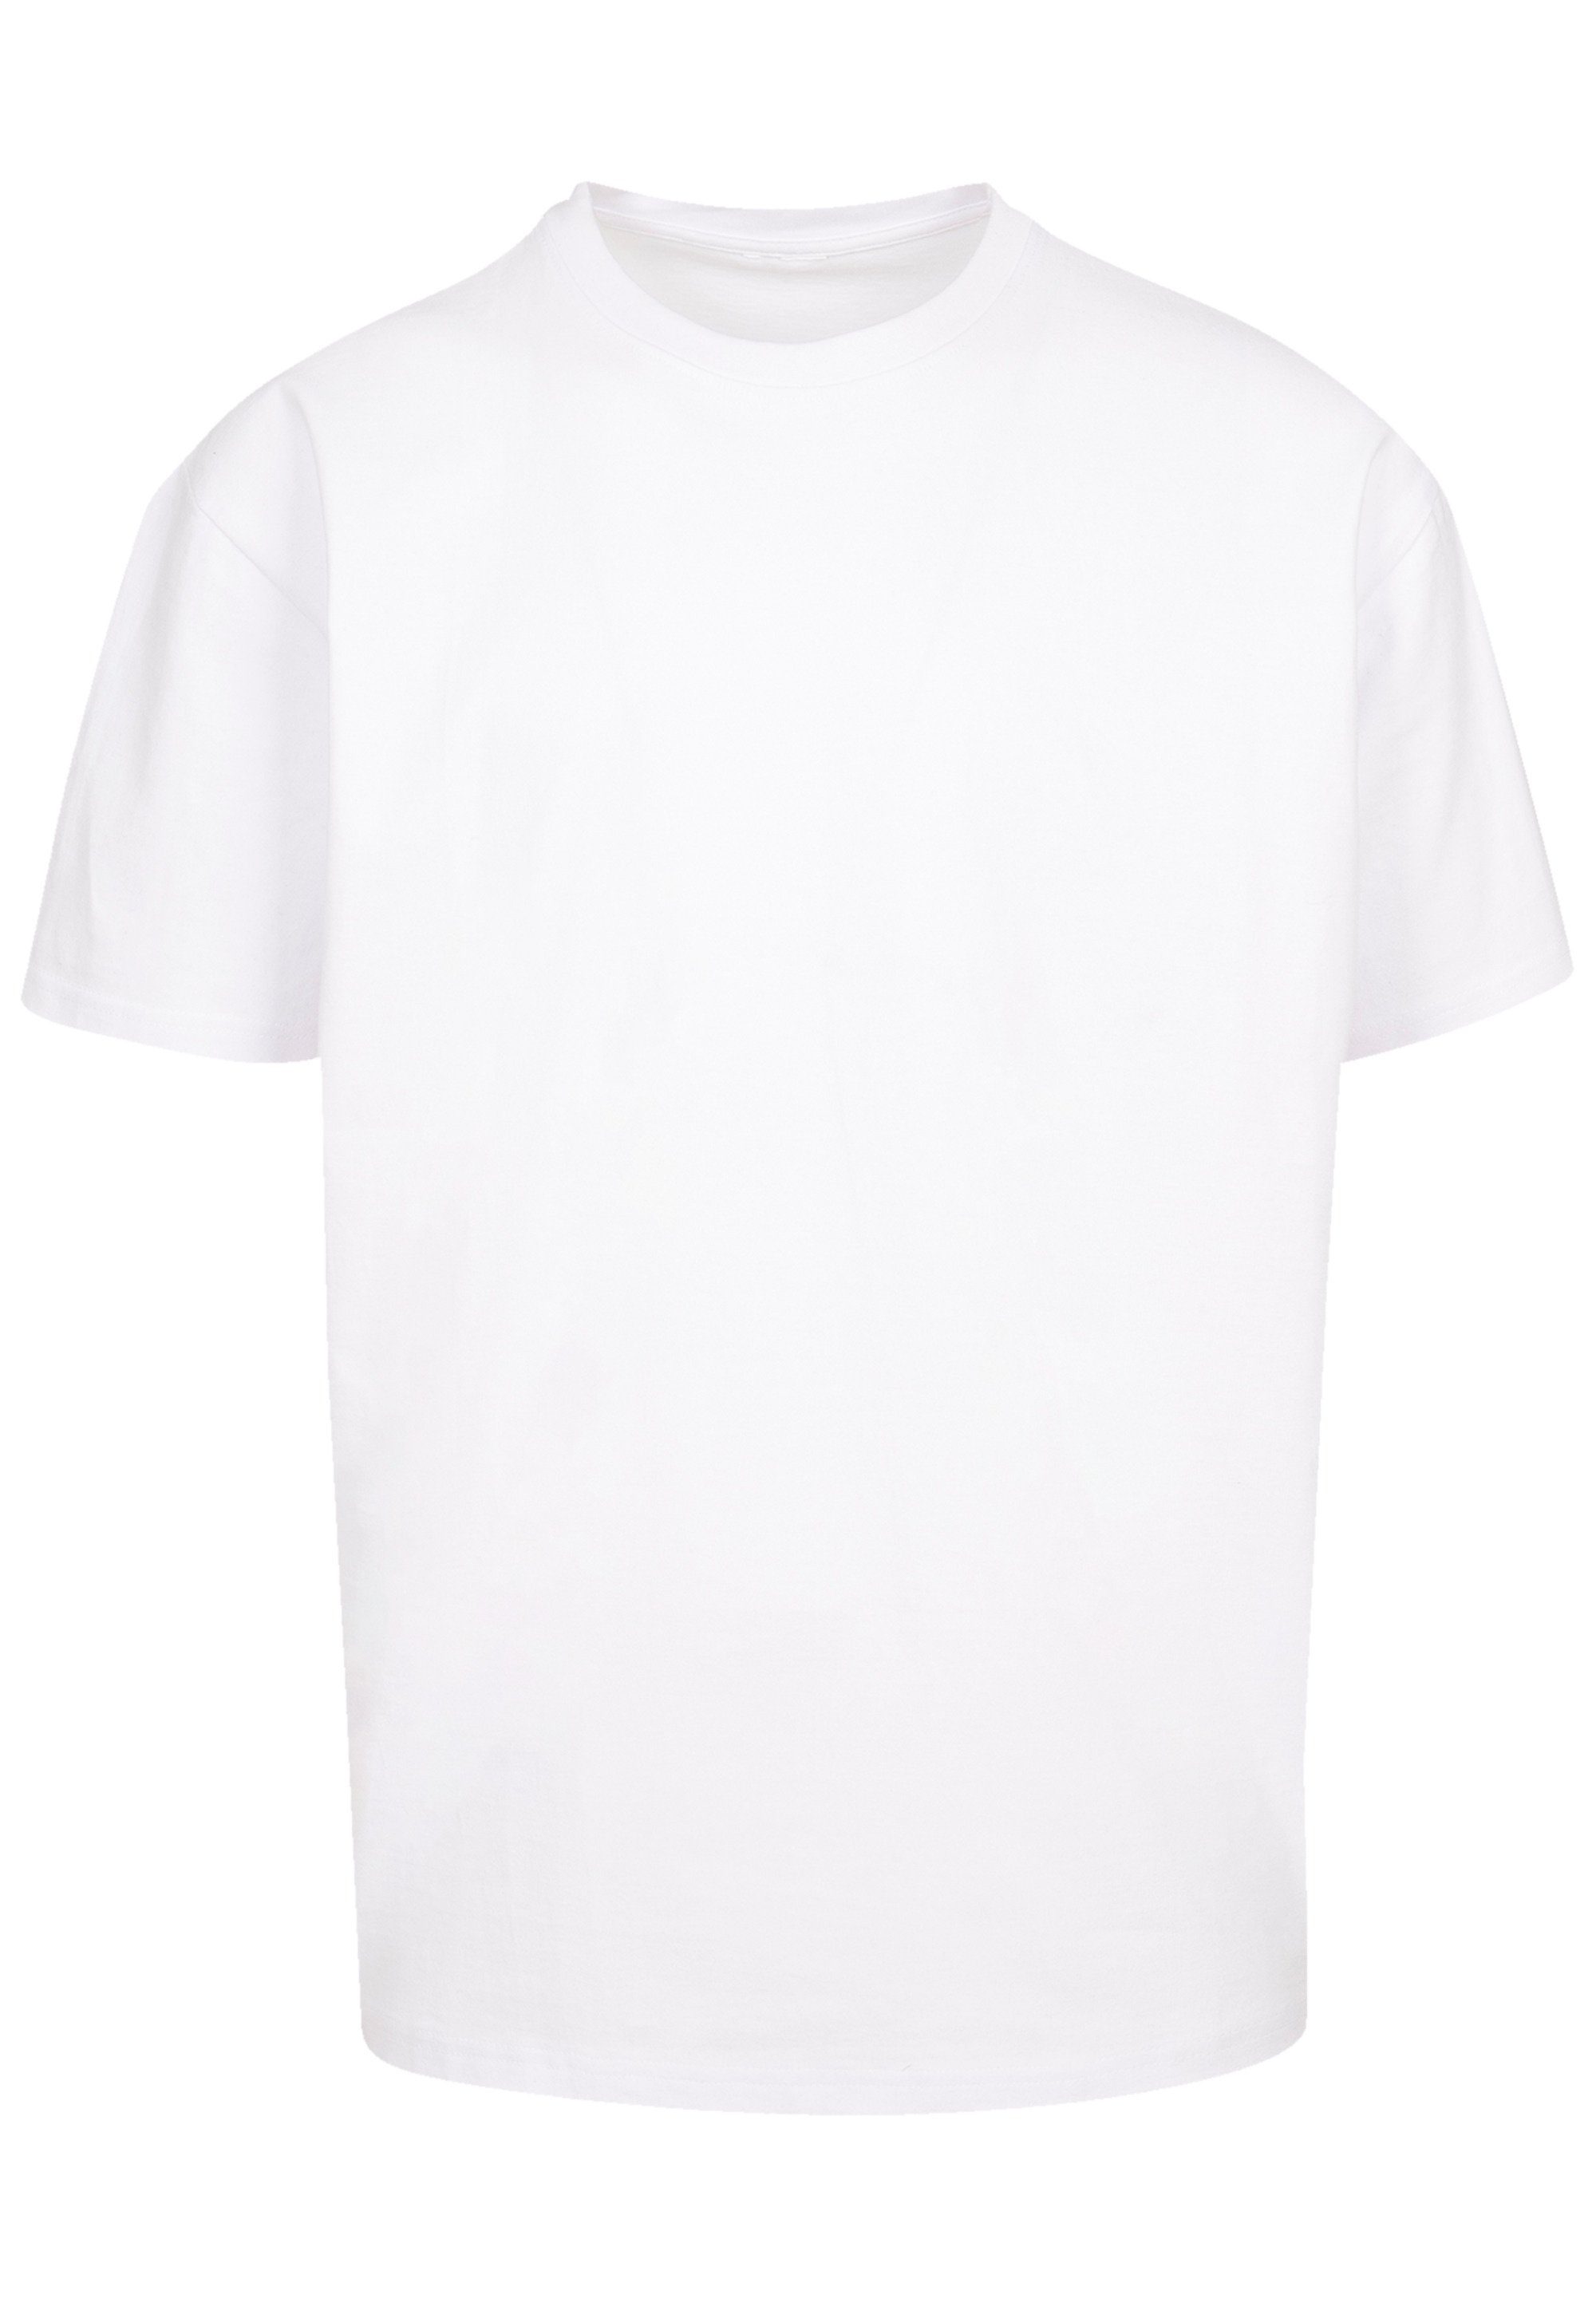 Print F4NT4STIC Bora weiß Island Leewards T-Shirt Bora